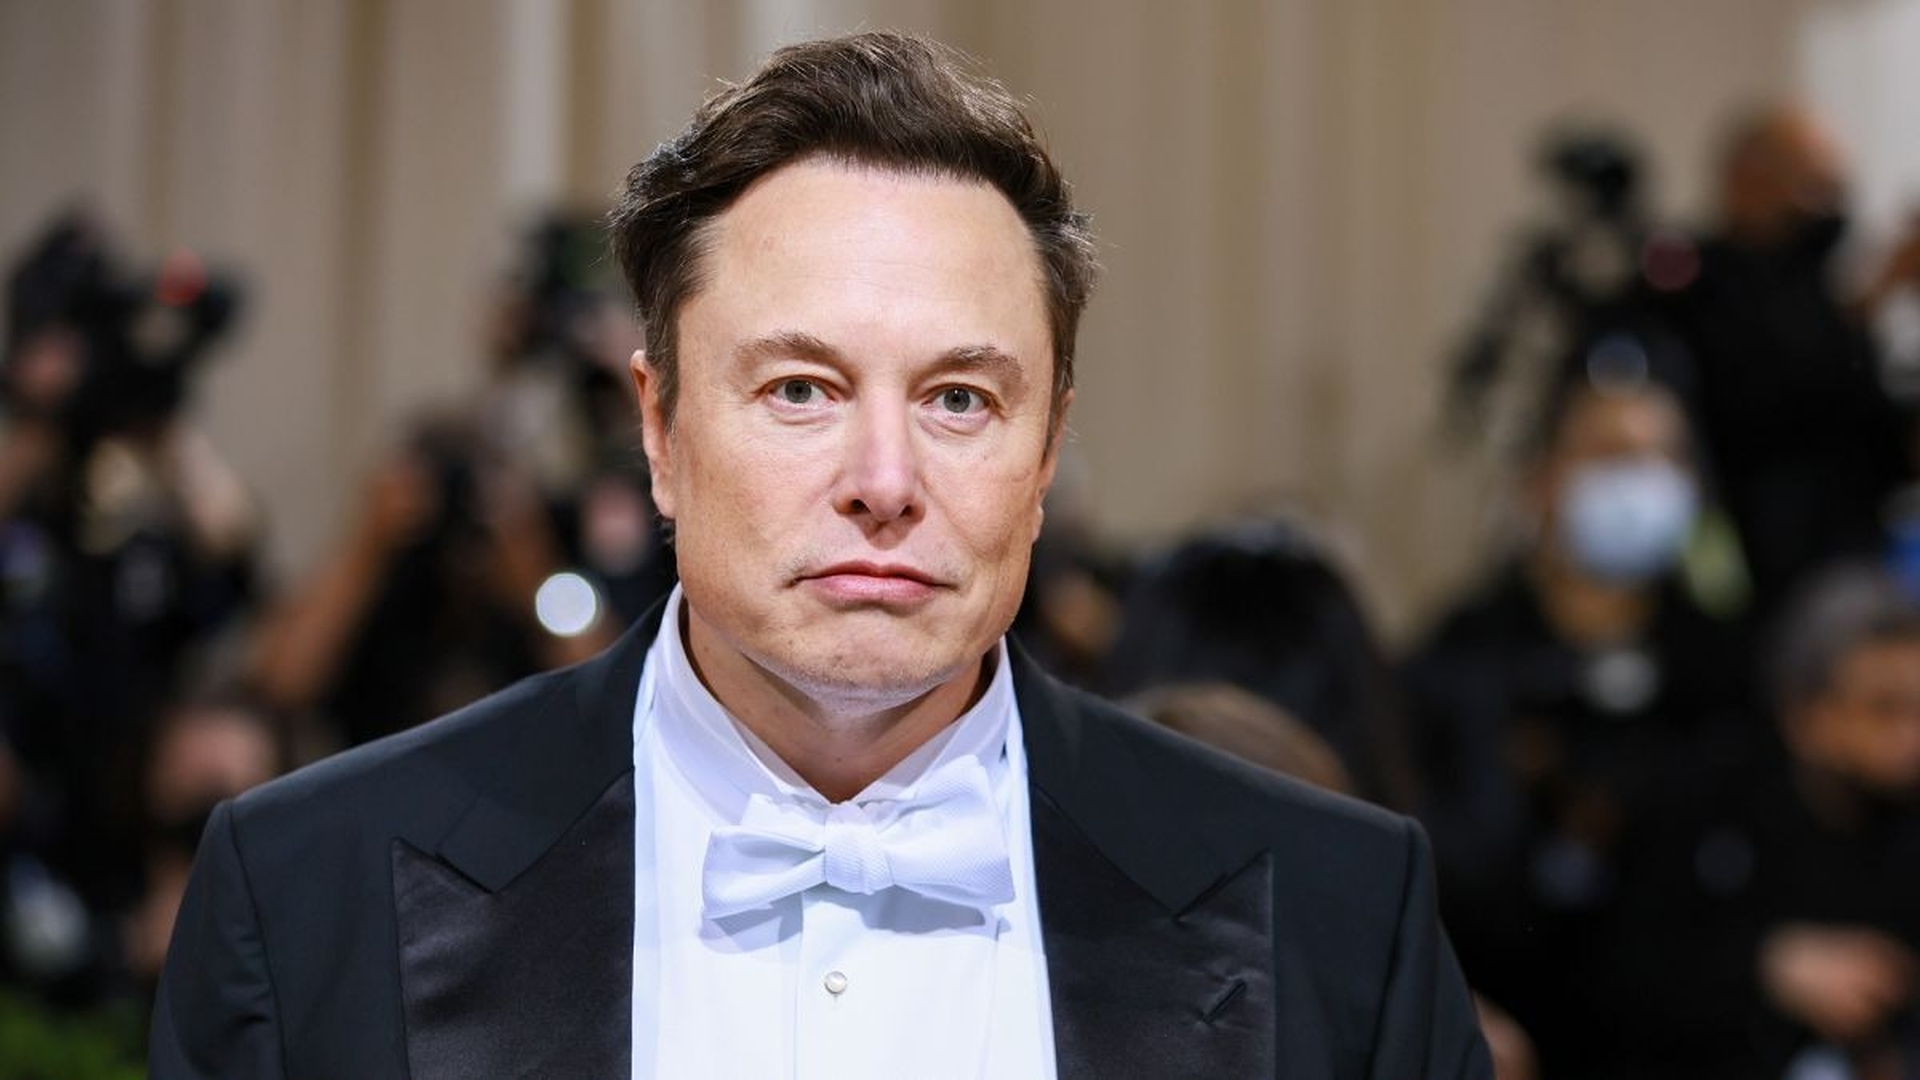 In questo articolo, tratteremo l'azionista di Twitter che fa causa a Elon Musk sulla base del fatto che il CEO di Tesla ha manipolato le azioni di Twitter per profitto personale.